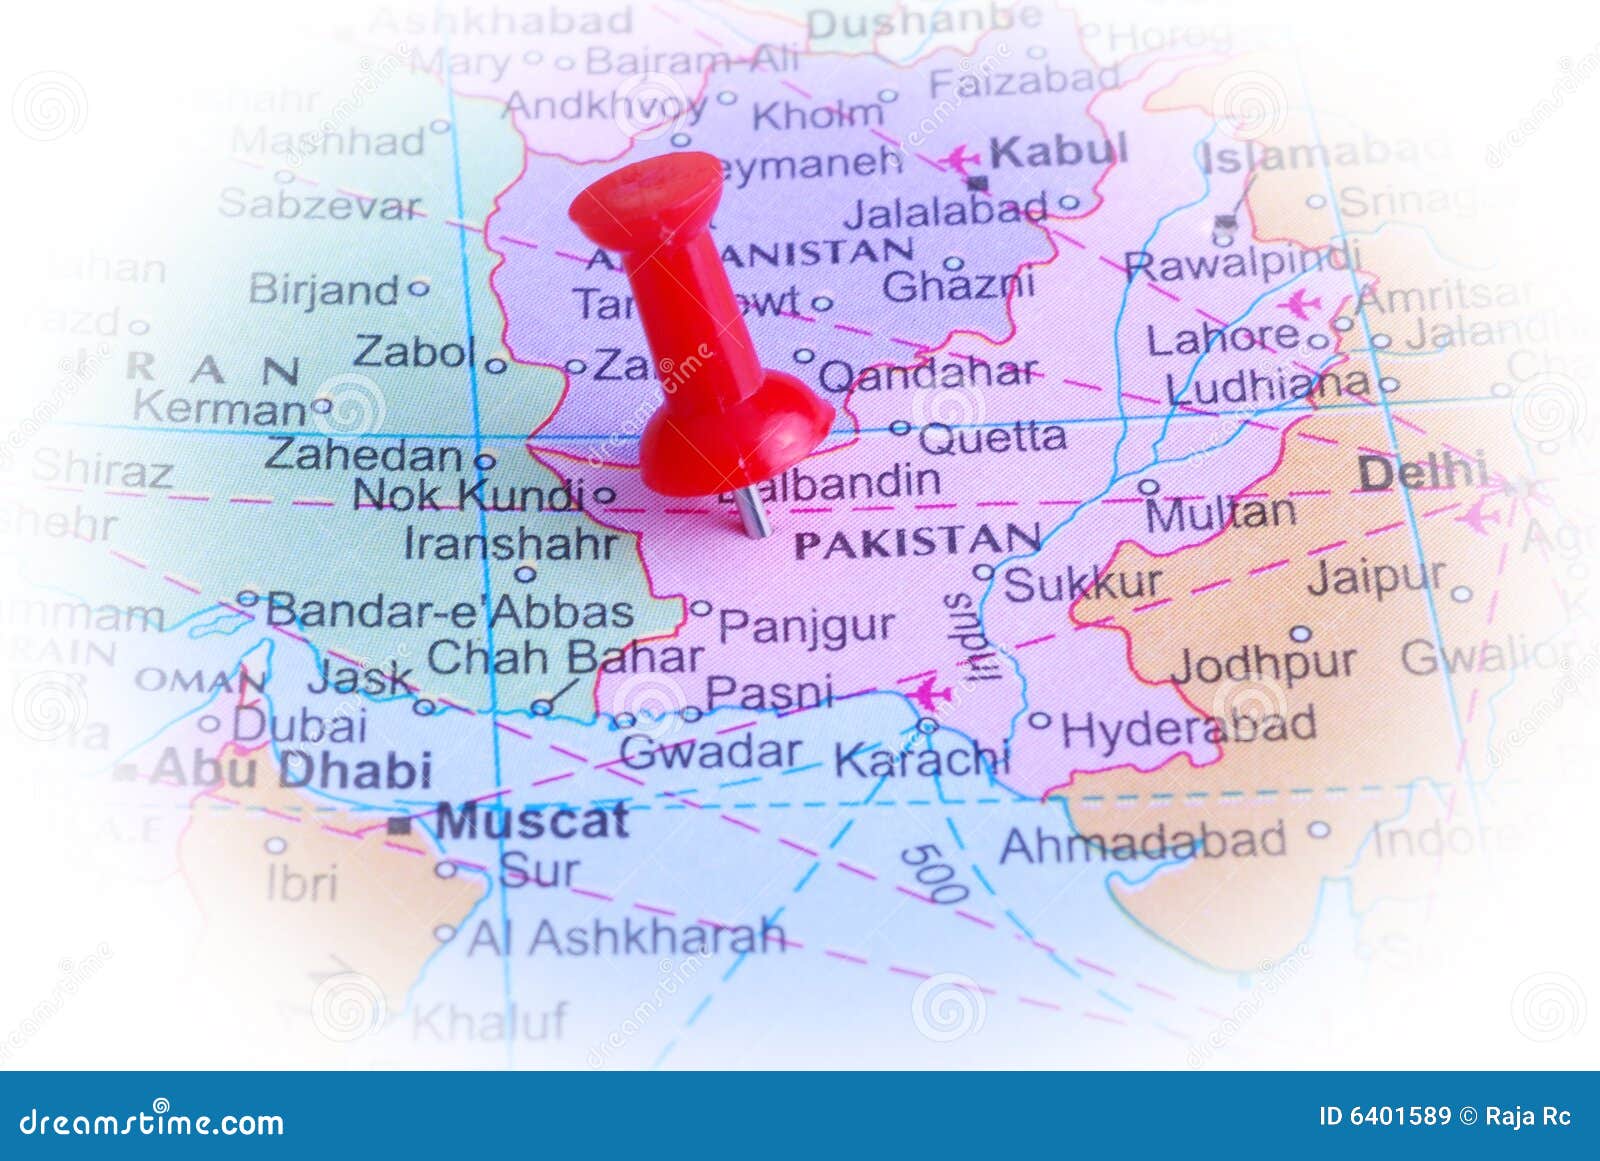 pakistan in map